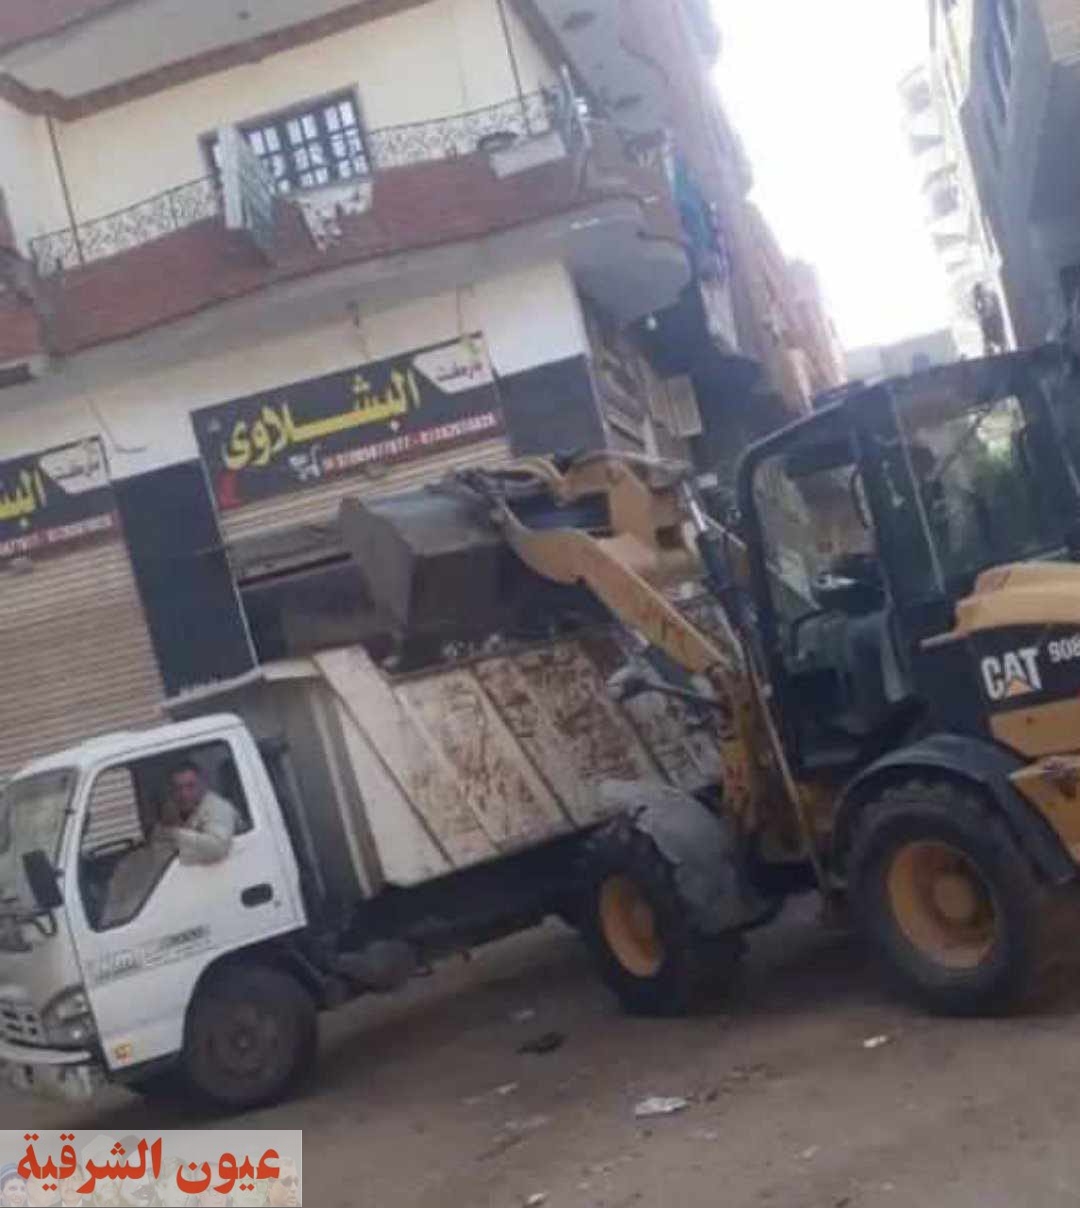 حملة نظافة مكبرة وإزالة الاسوار وغرف بالدبش الابيض بمدينة الحسينية